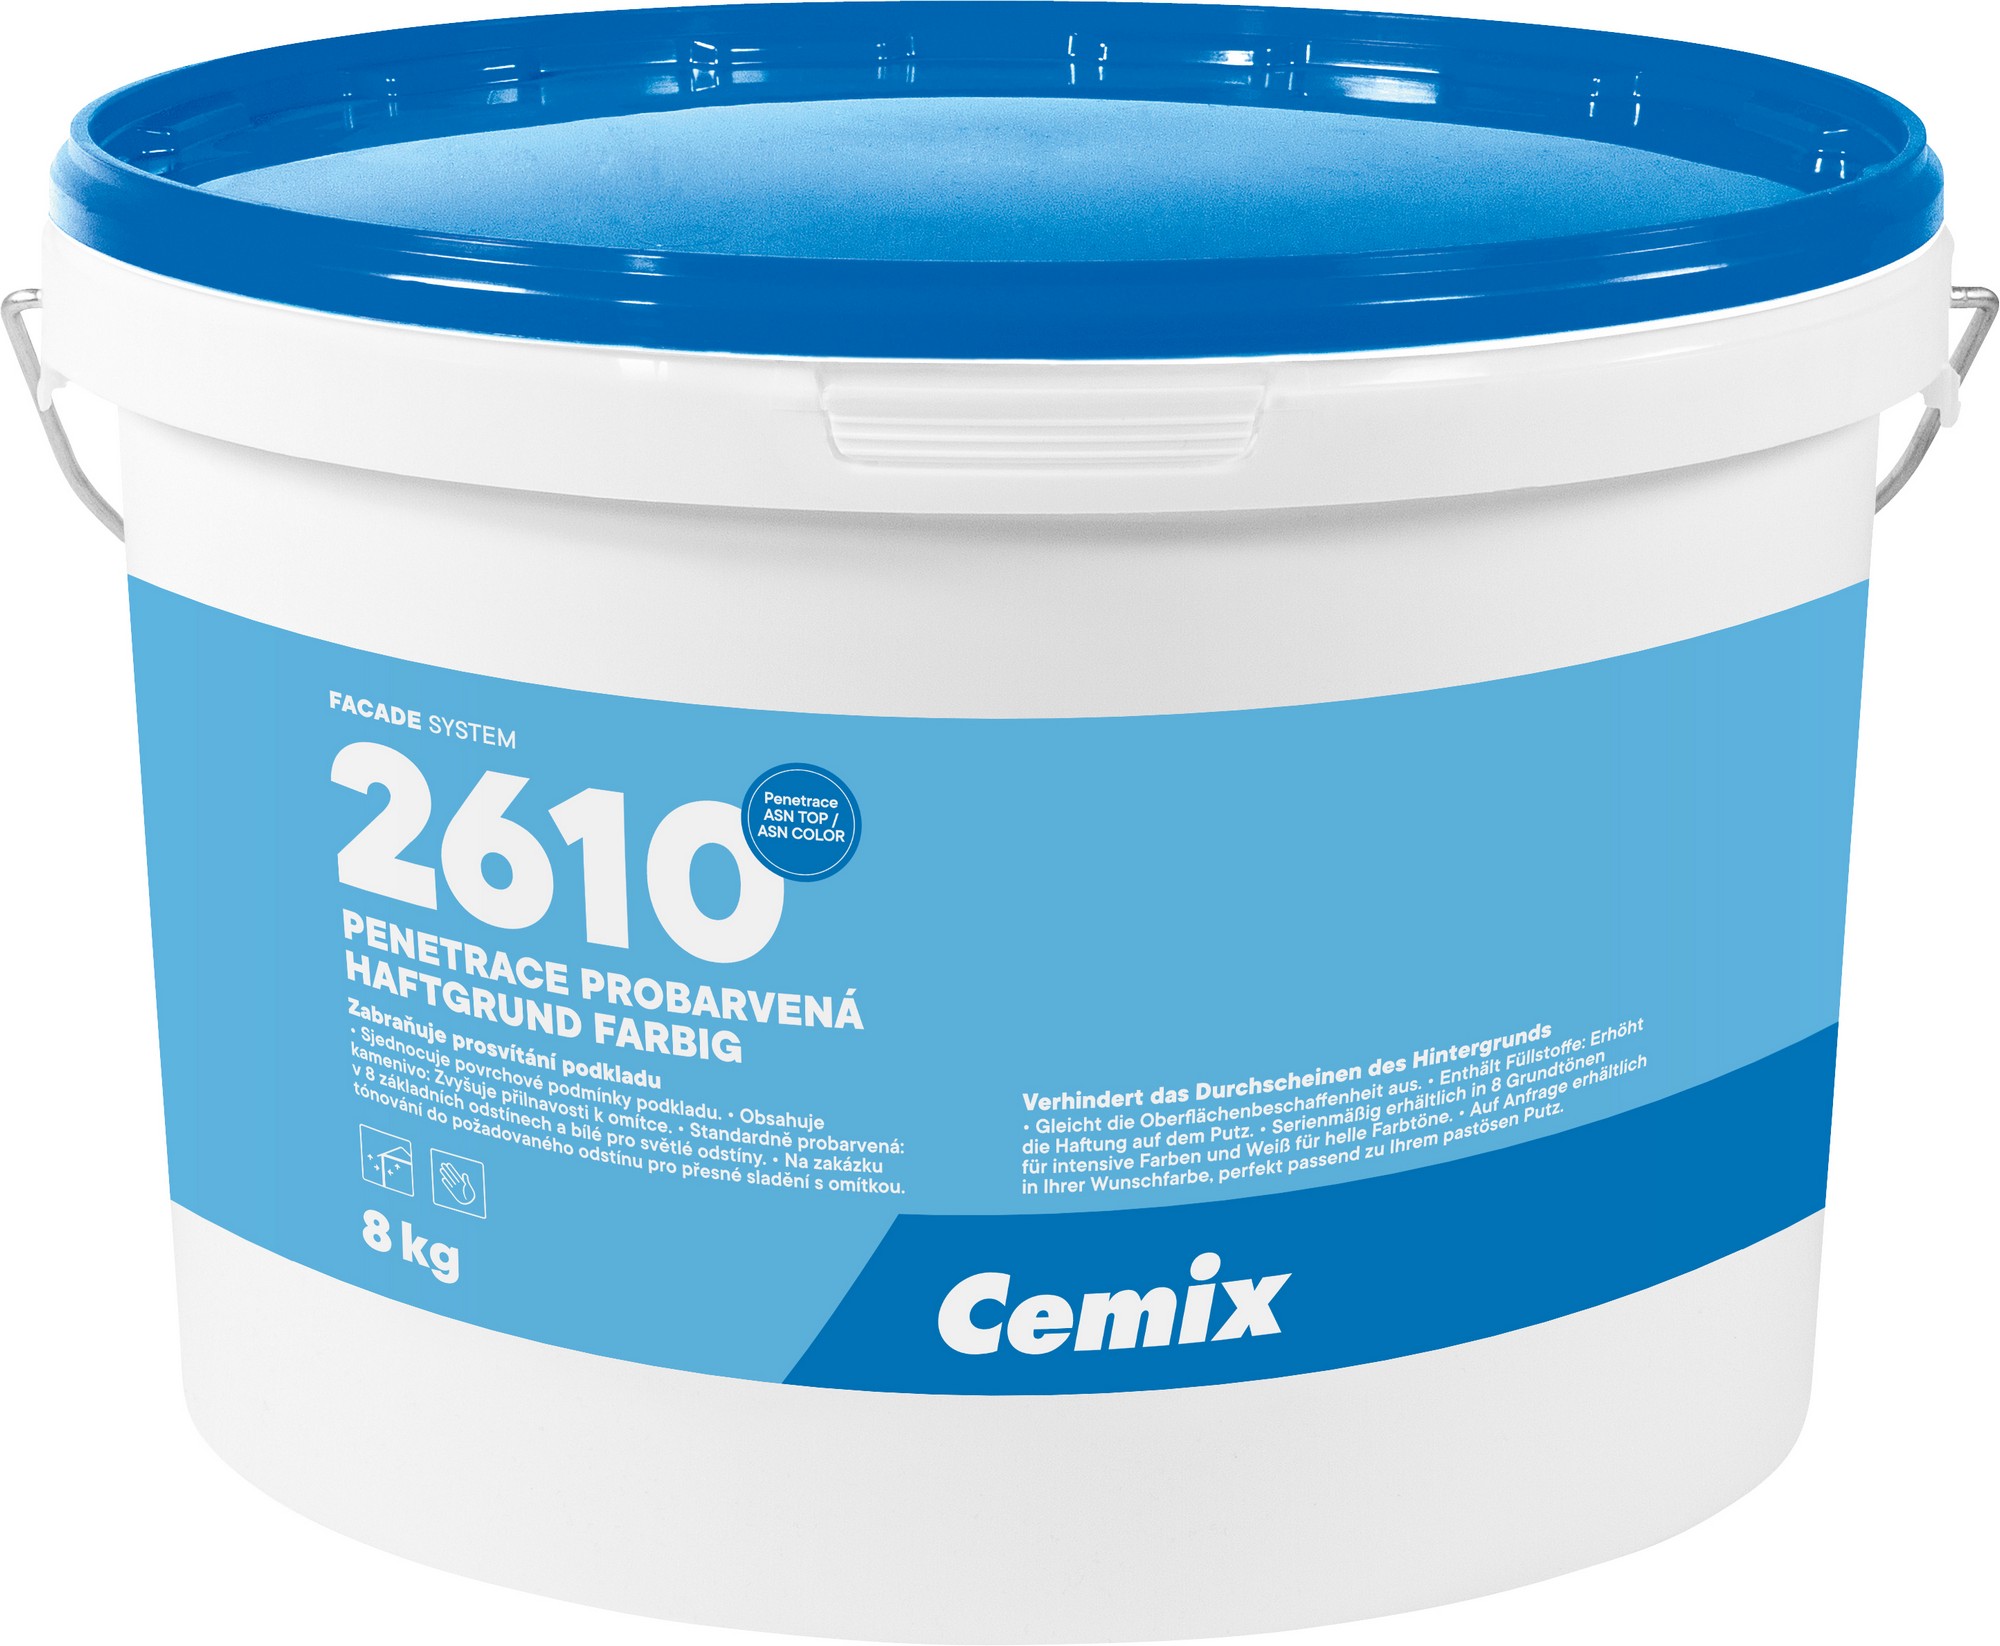 Penetrace probarvená Cemix 2610 hnědá 8 kg